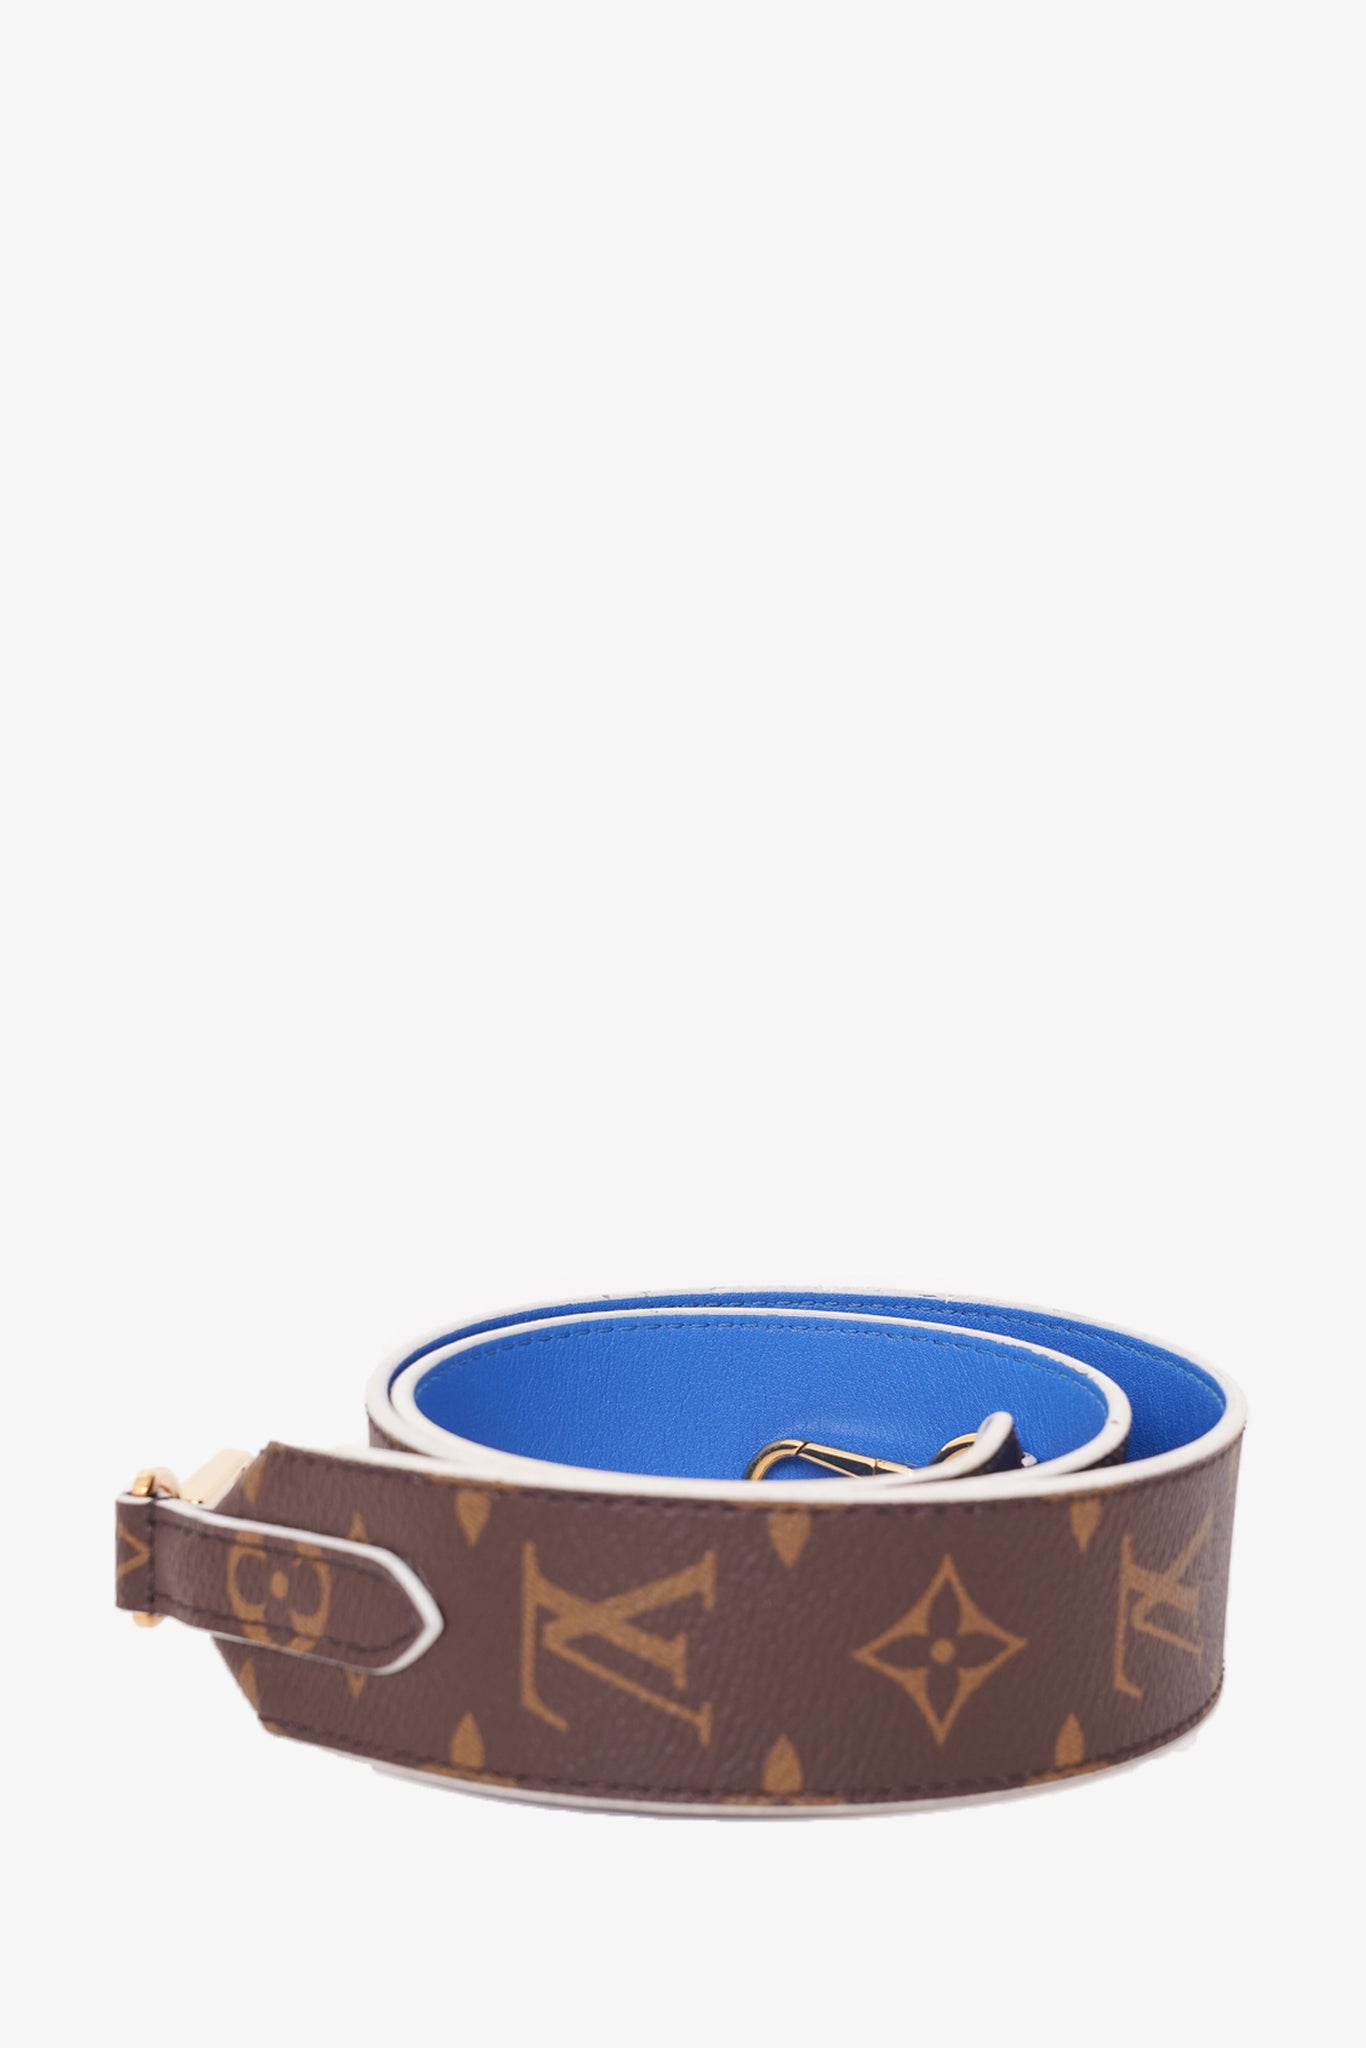 Louis Vuitton Bandouliere Monogram/Blue Bag Strap – Mine & Yours